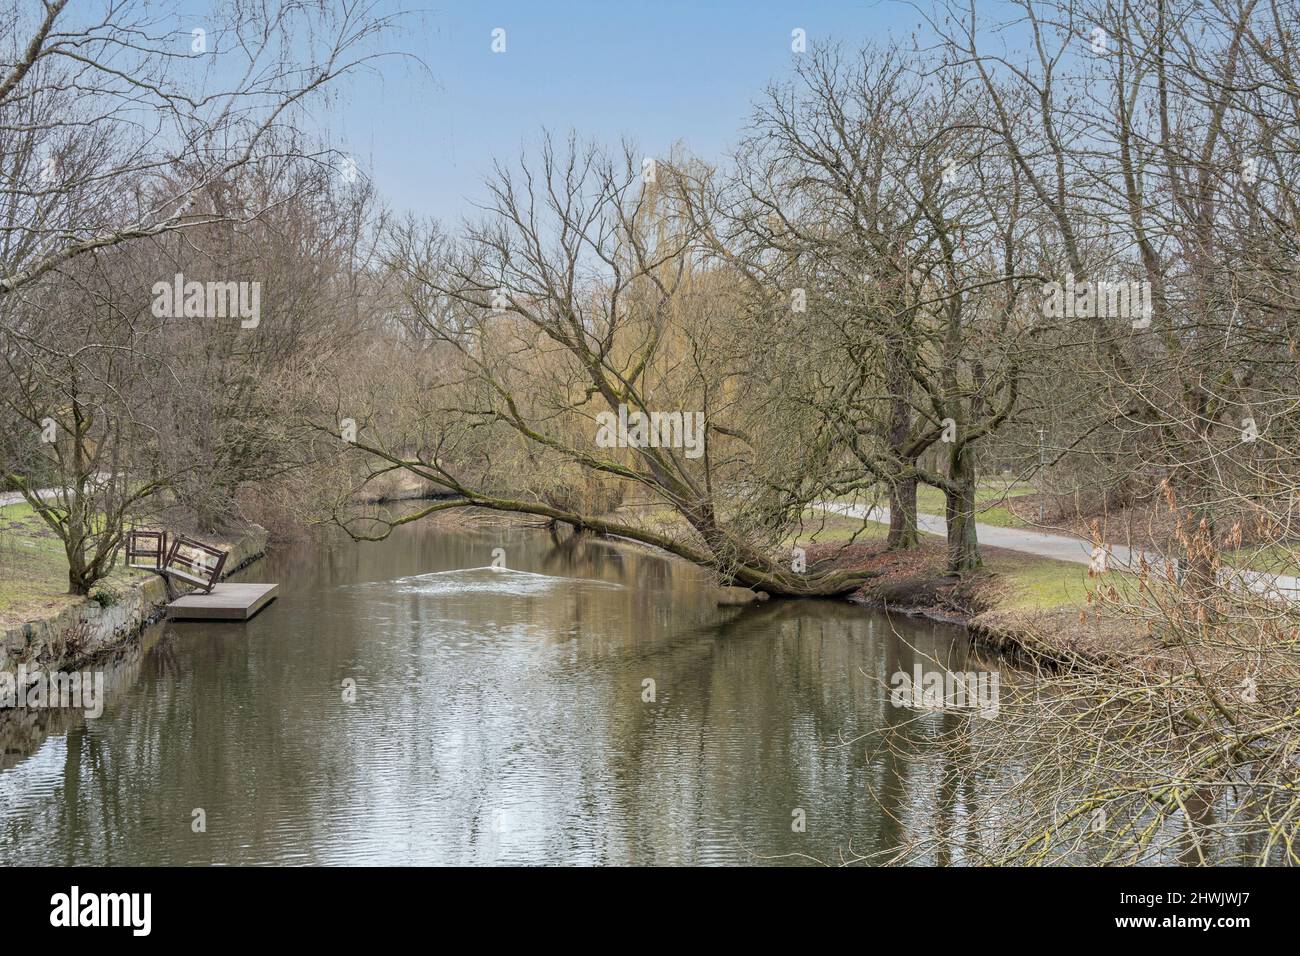 Die oker im Braunschweiger Bürgerpark, die Uferseiten sind von alten Bäumen gesäumt , Grünstreifen verlaufen neben dem Fluss. Auch Bootein Sanleger ... Foto de stock